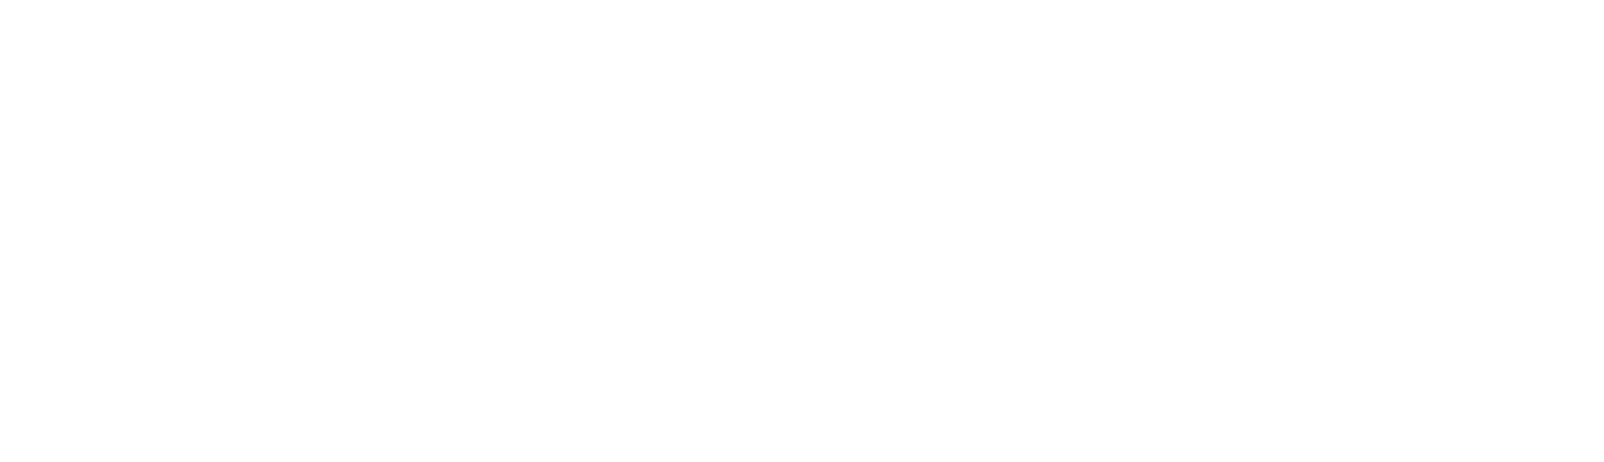 Enanta Pharmaceuticals
 logo large for dark backgrounds (transparent PNG)